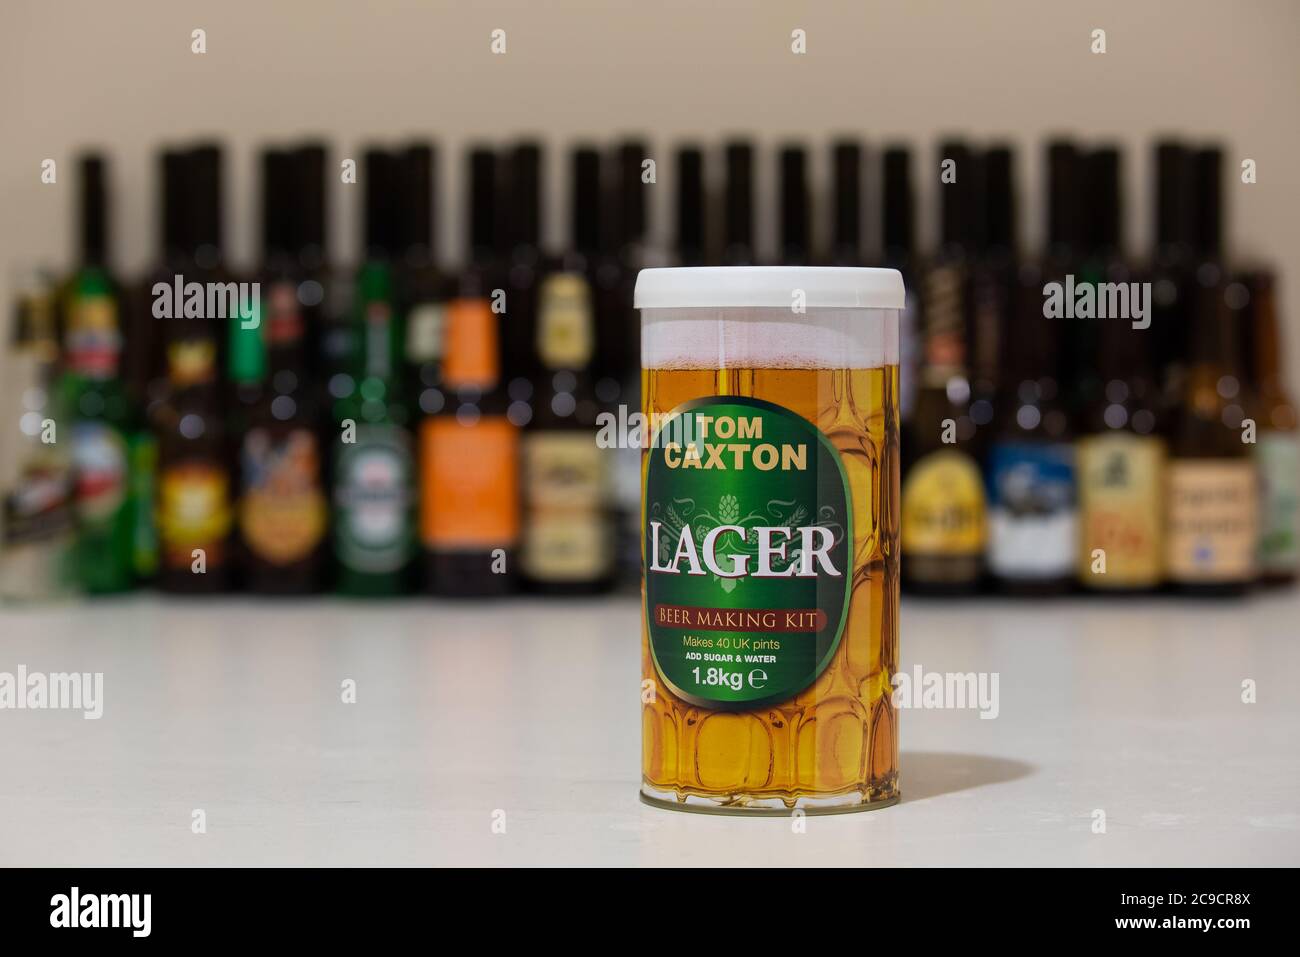 ANKARA, TURQUIE - 15 janvier 2019 : kit de bière Tom Caxton prêt à être utilisé à domicile. Homebrassage est un passe-temps en croissance rapide, en raison de prix abordables et ri Banque D'Images